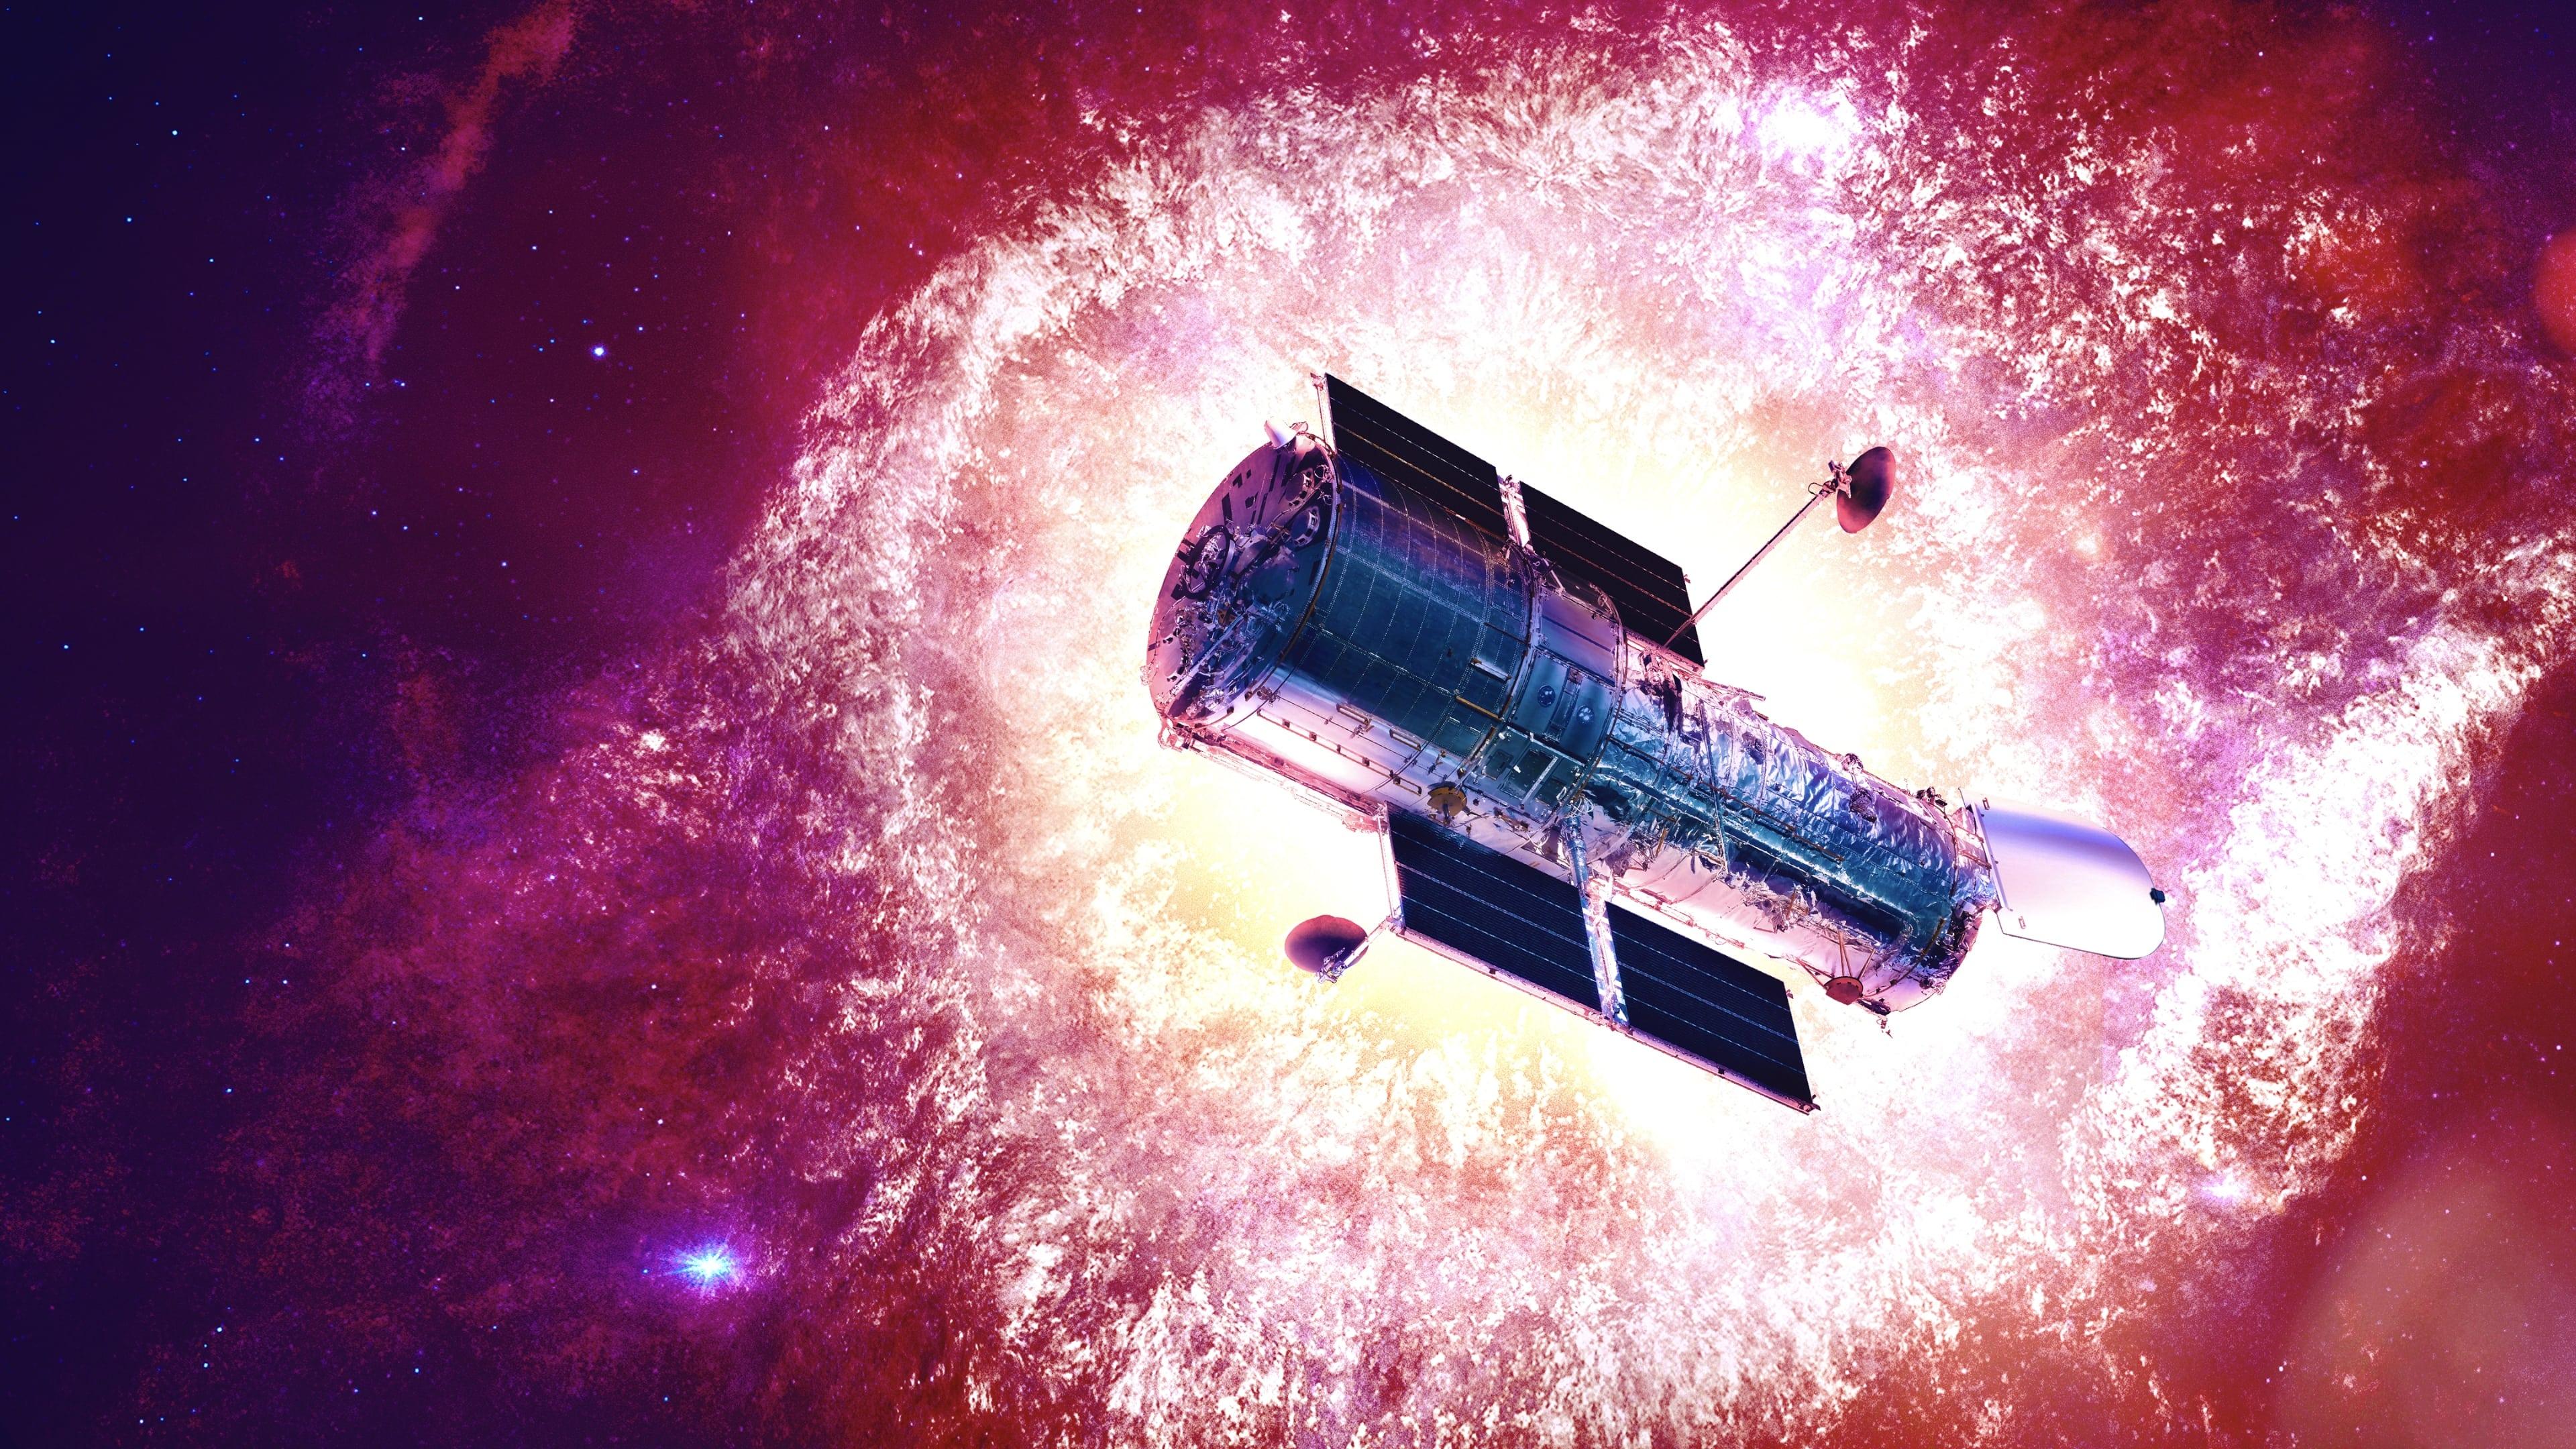 Hubble's Cosmic Journey backdrop